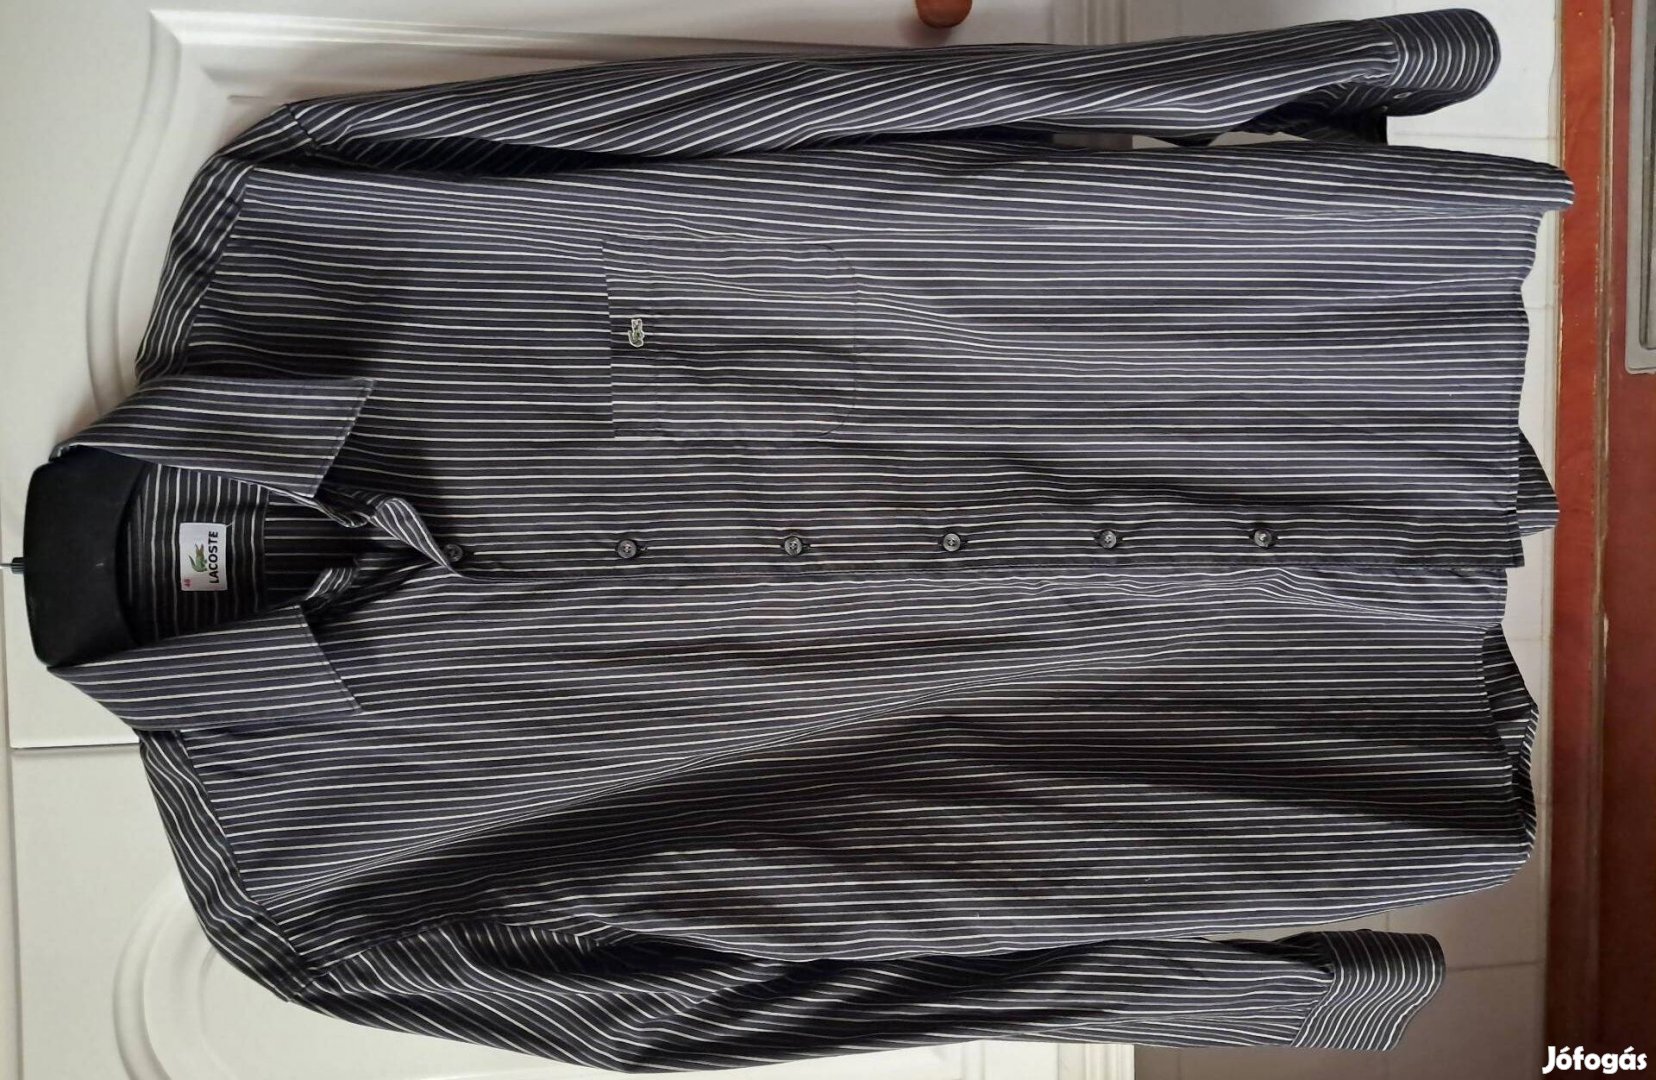 46-os Fekete- szürke csíkos Lacoste ing